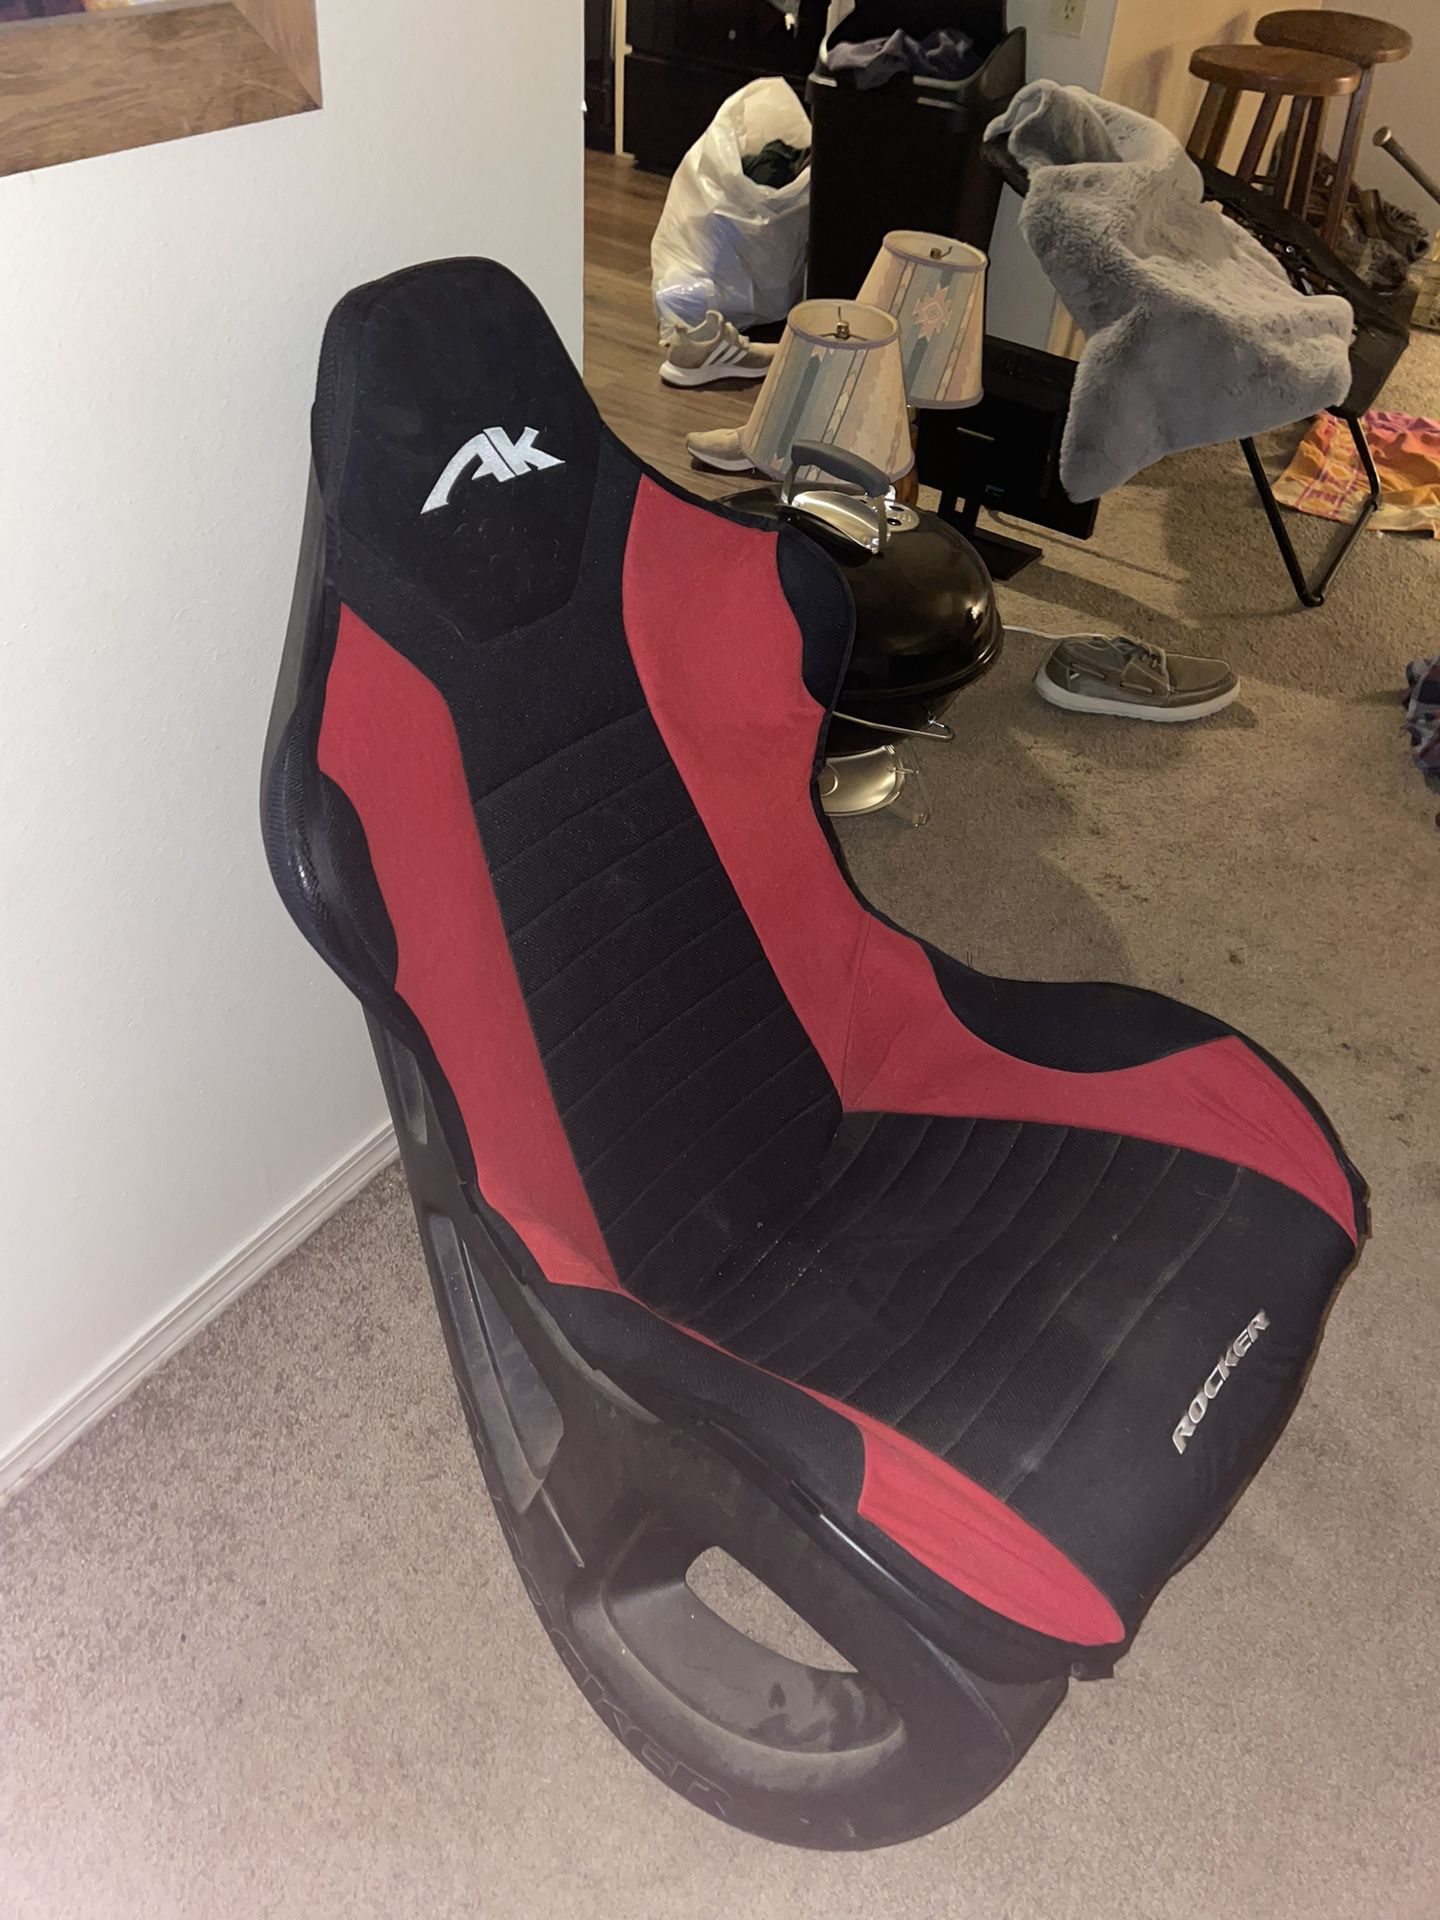 Rocking Gamer Chair